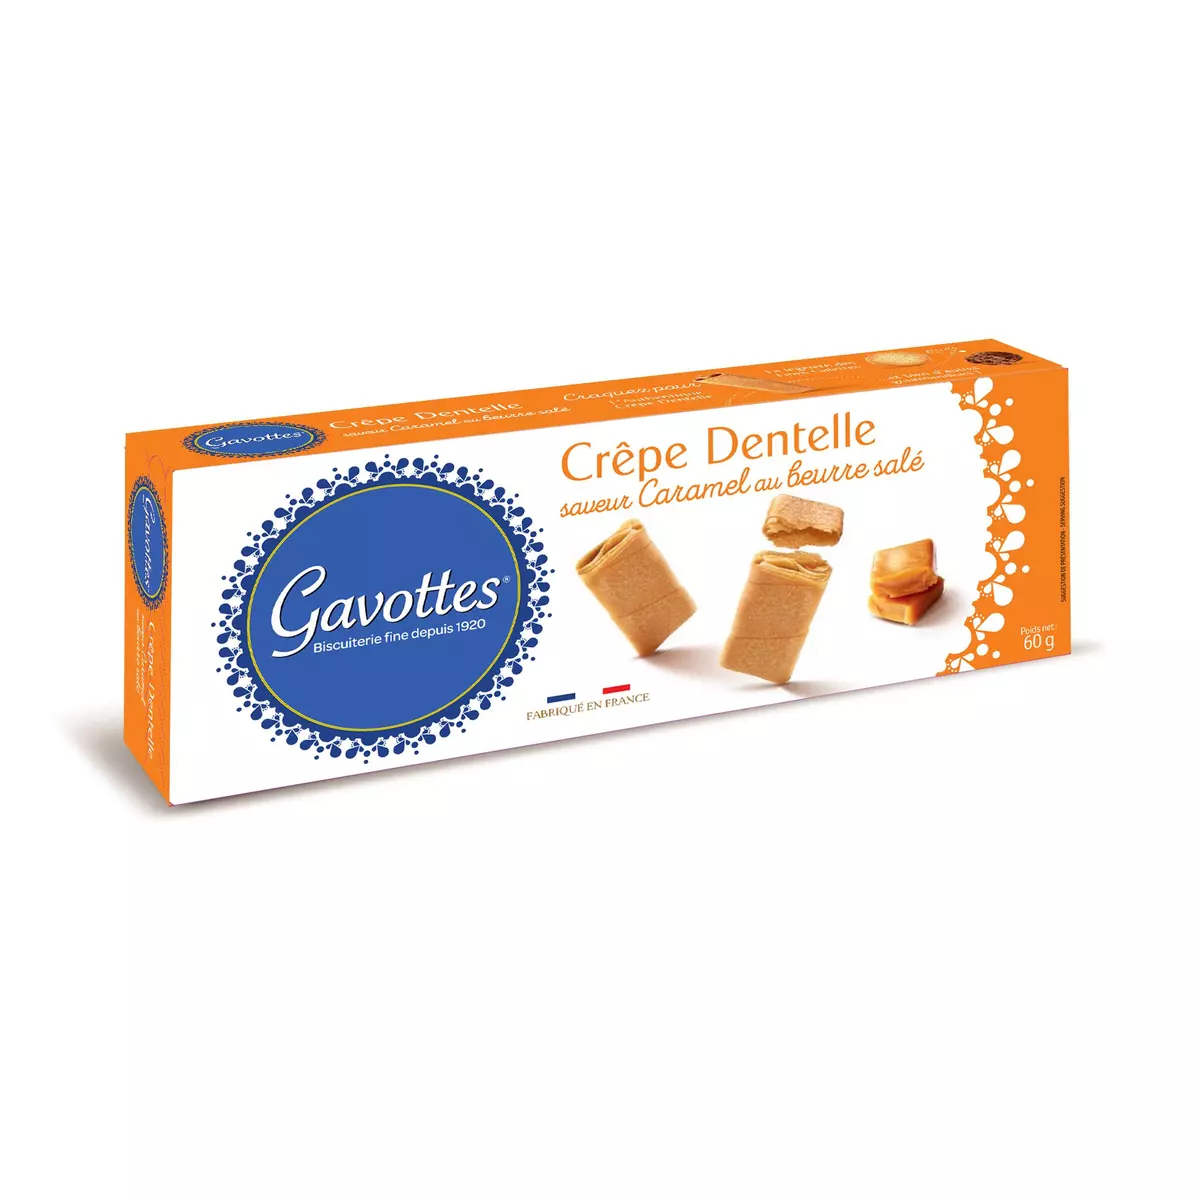 GAVOTTES Crêpes dentelles saveur caramel au beurre salé 60g